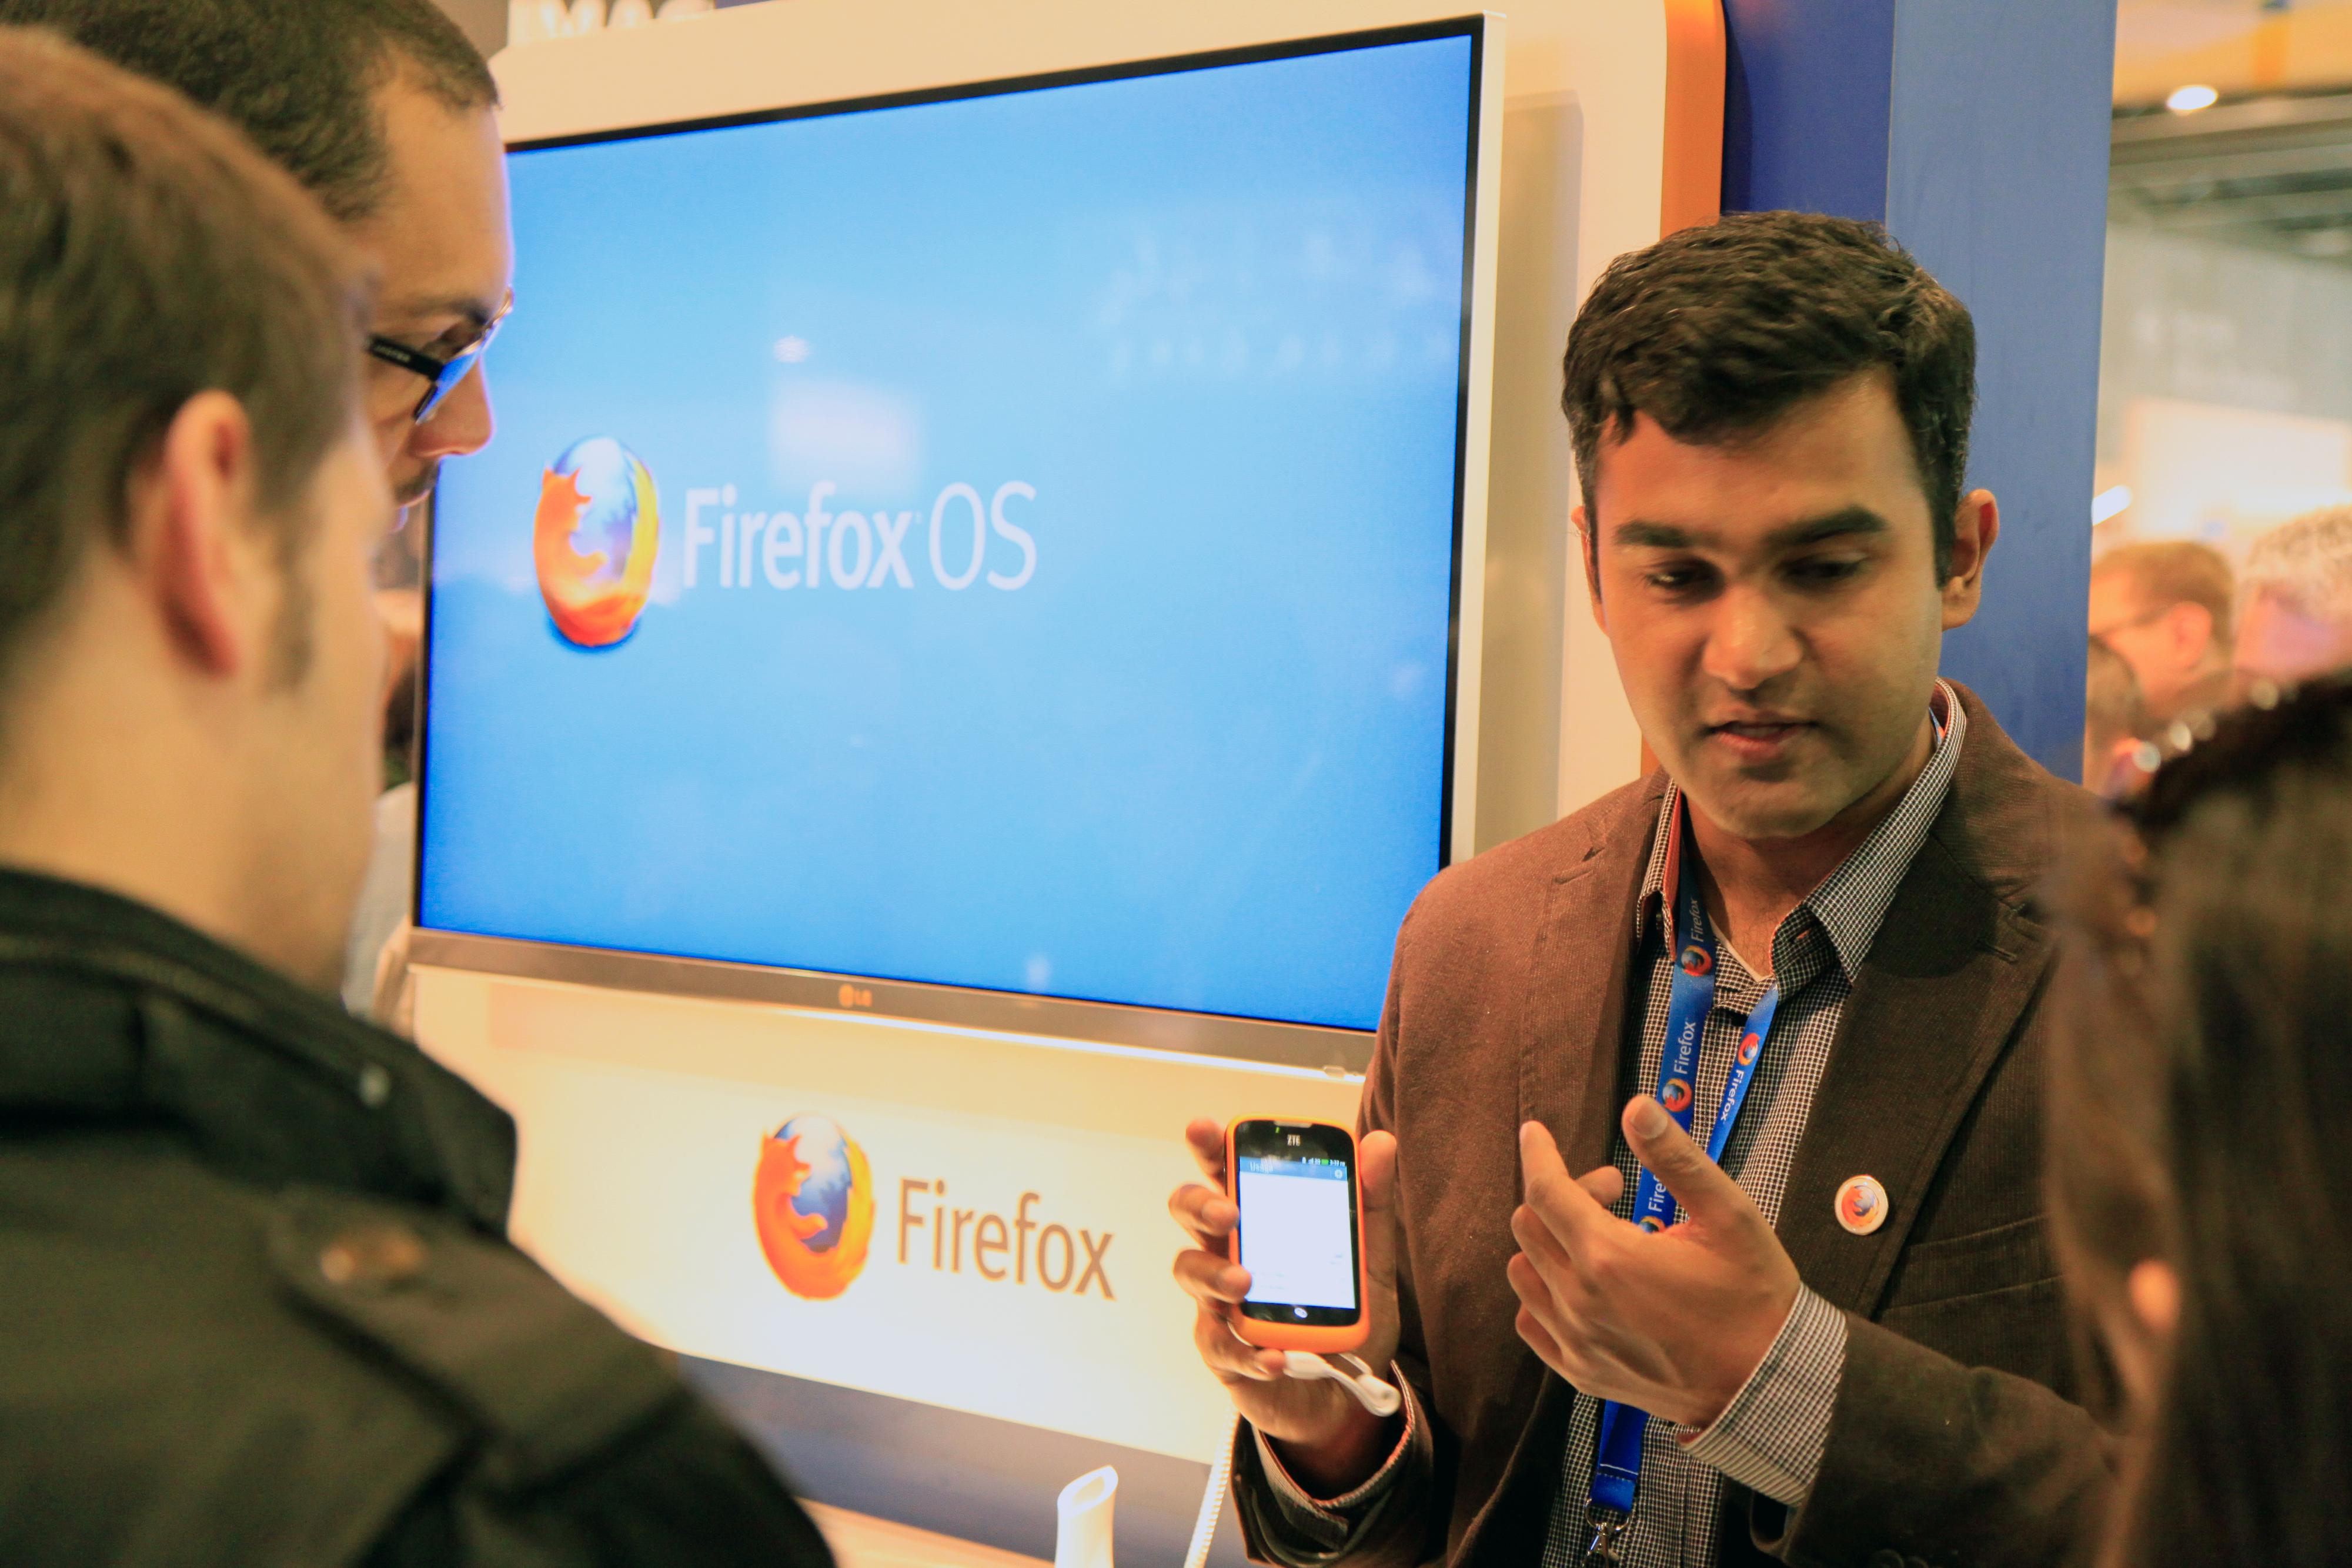 Det var stor interesse for Firefox OS blant de besøkende på messen.Foto: Kurt Lekanger, Amobil.no